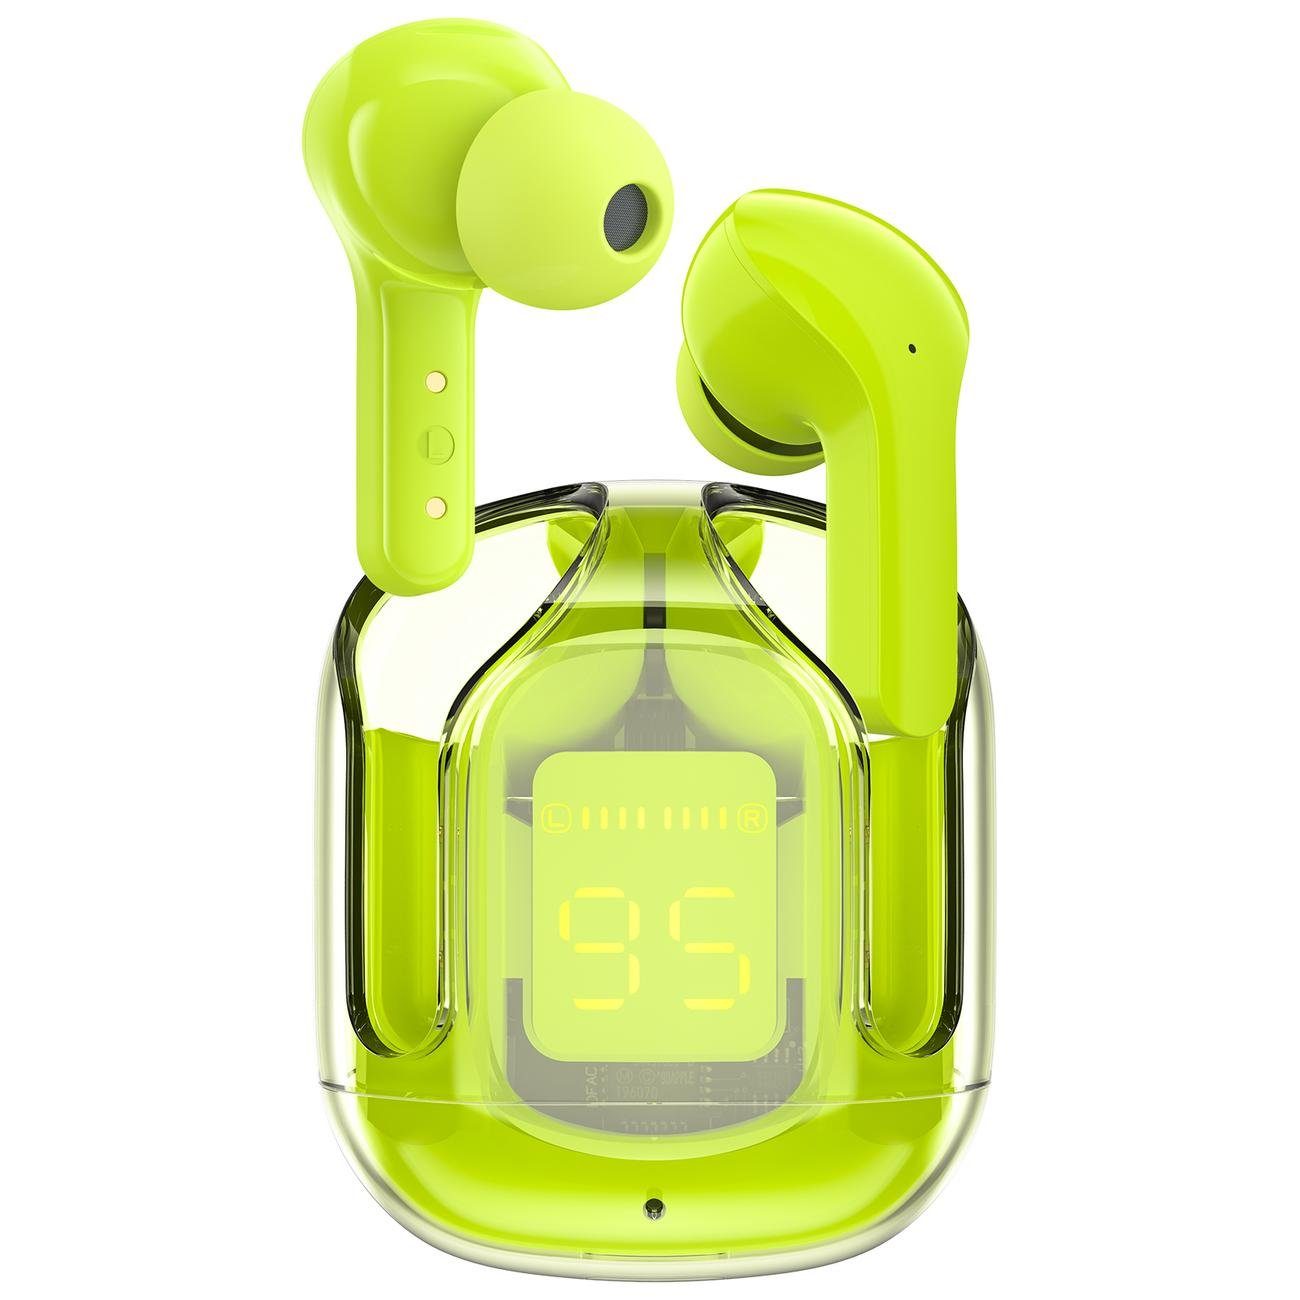 Kopfhörer Bluetooth Earbuds Grün T6 Youth Wireless In-Ear 5.0 TWS Headphones wireless In-Ear-Kopfhörer Acefast